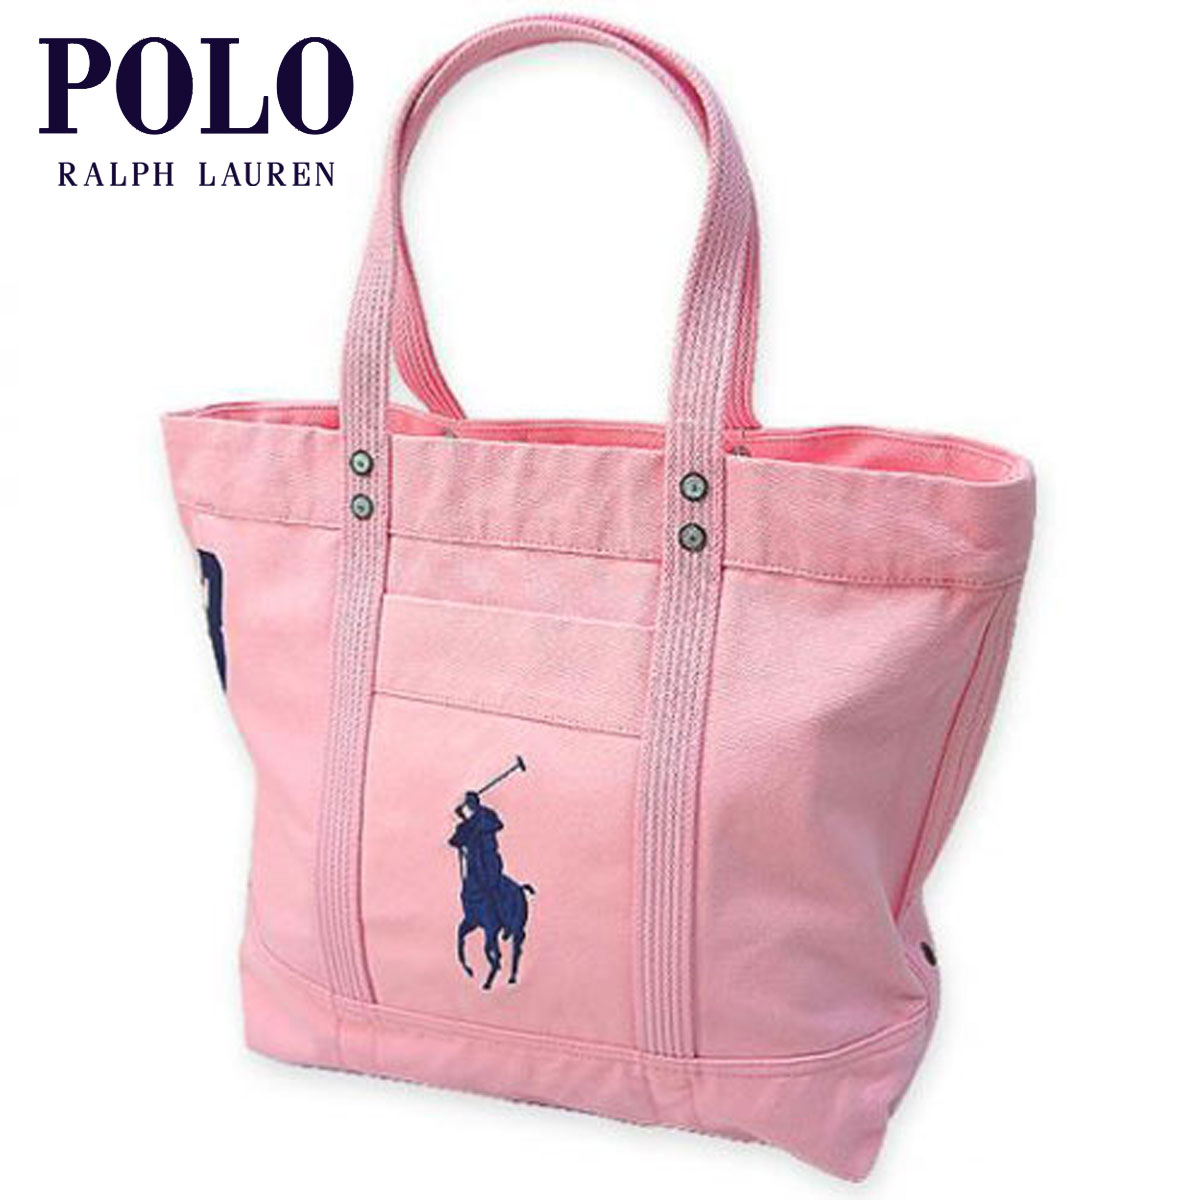 polo lessons ralph lauren purses bags